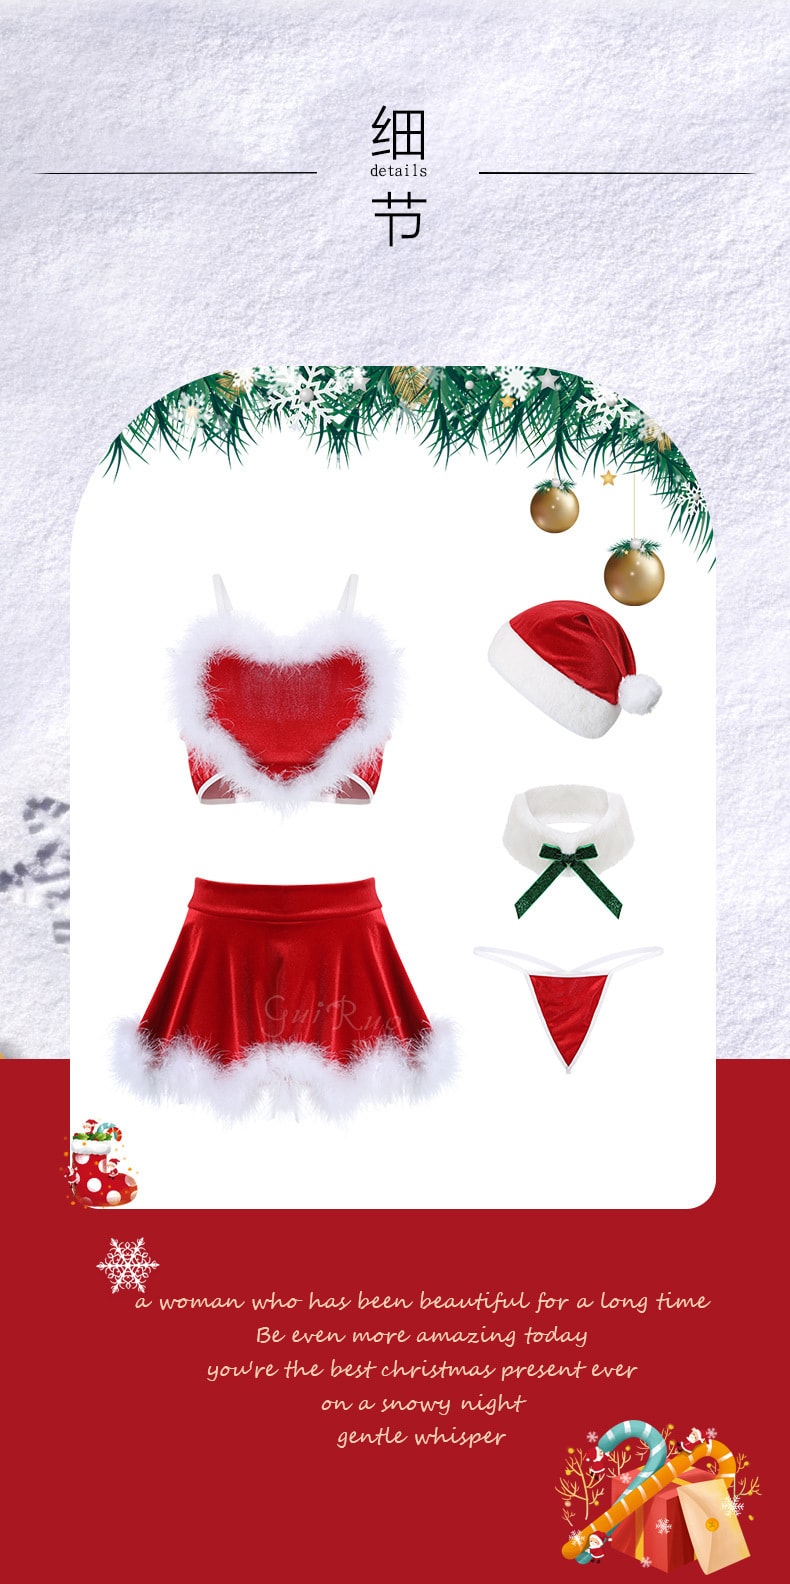 【中國直郵】瑰若 絲絨 愛心吊帶 聖誕睡裙 性感制服套裝 情趣內衣 紅色 M碼